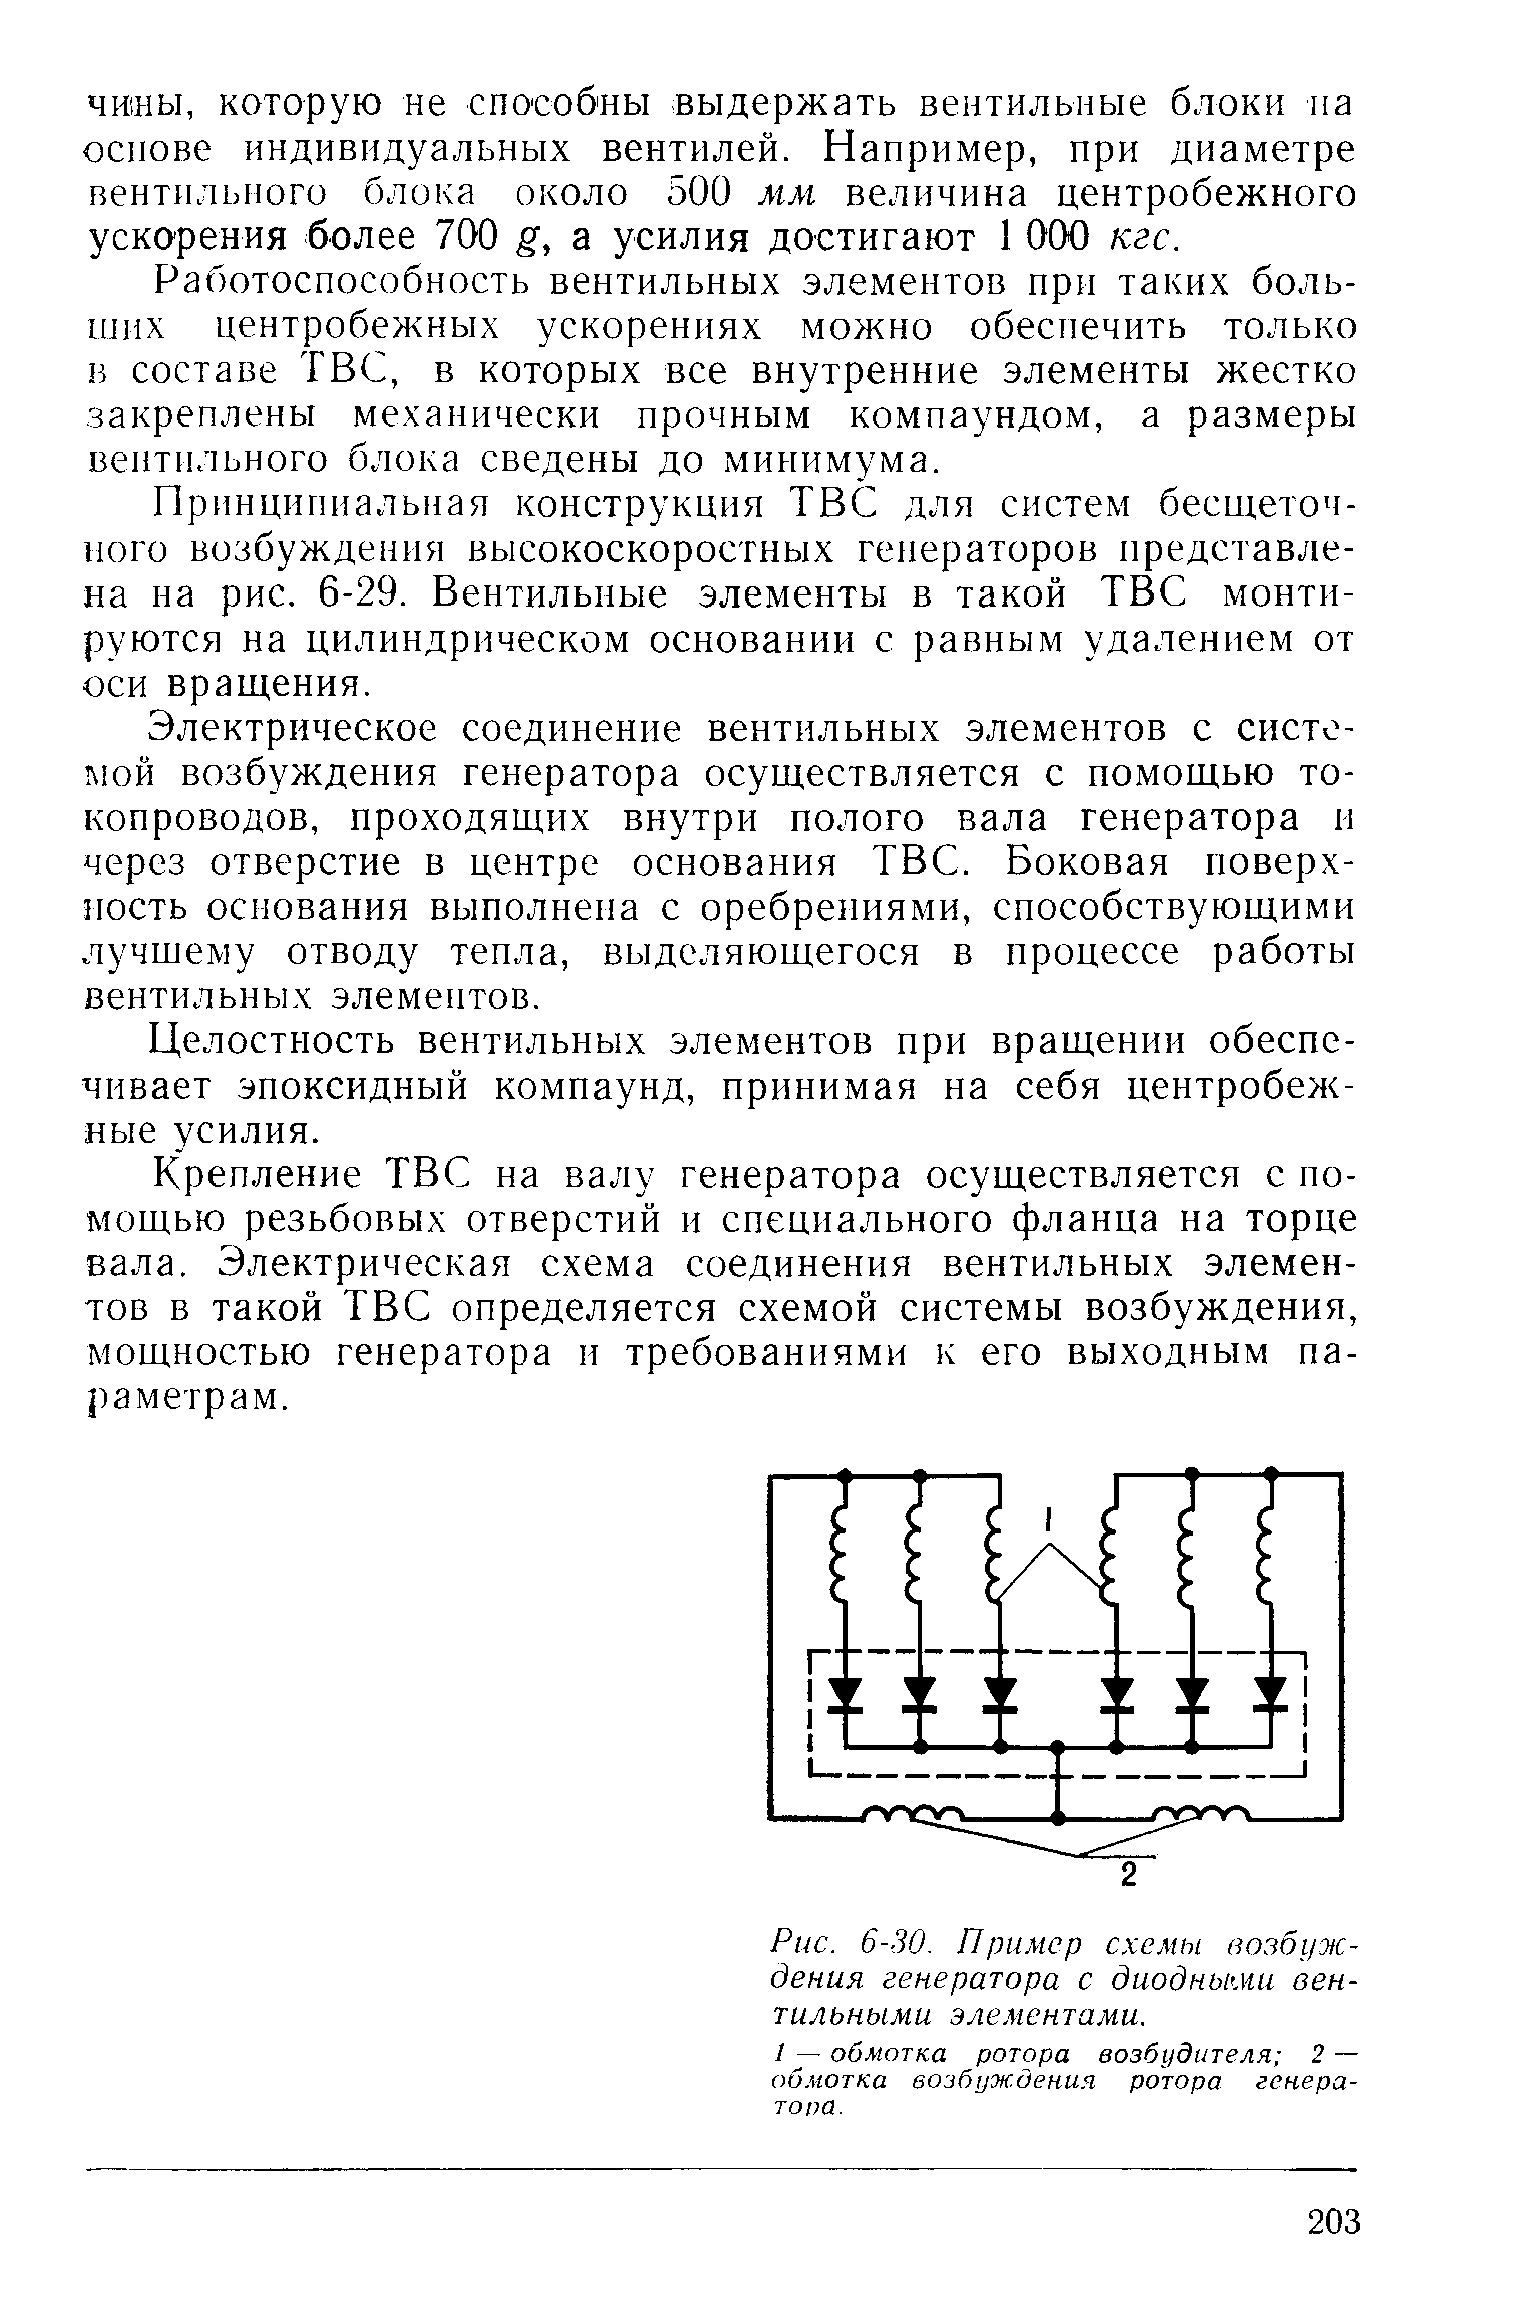 Рис. 6-30. Пример схемы возбуждения генератора с диодными вентильными элементами.
